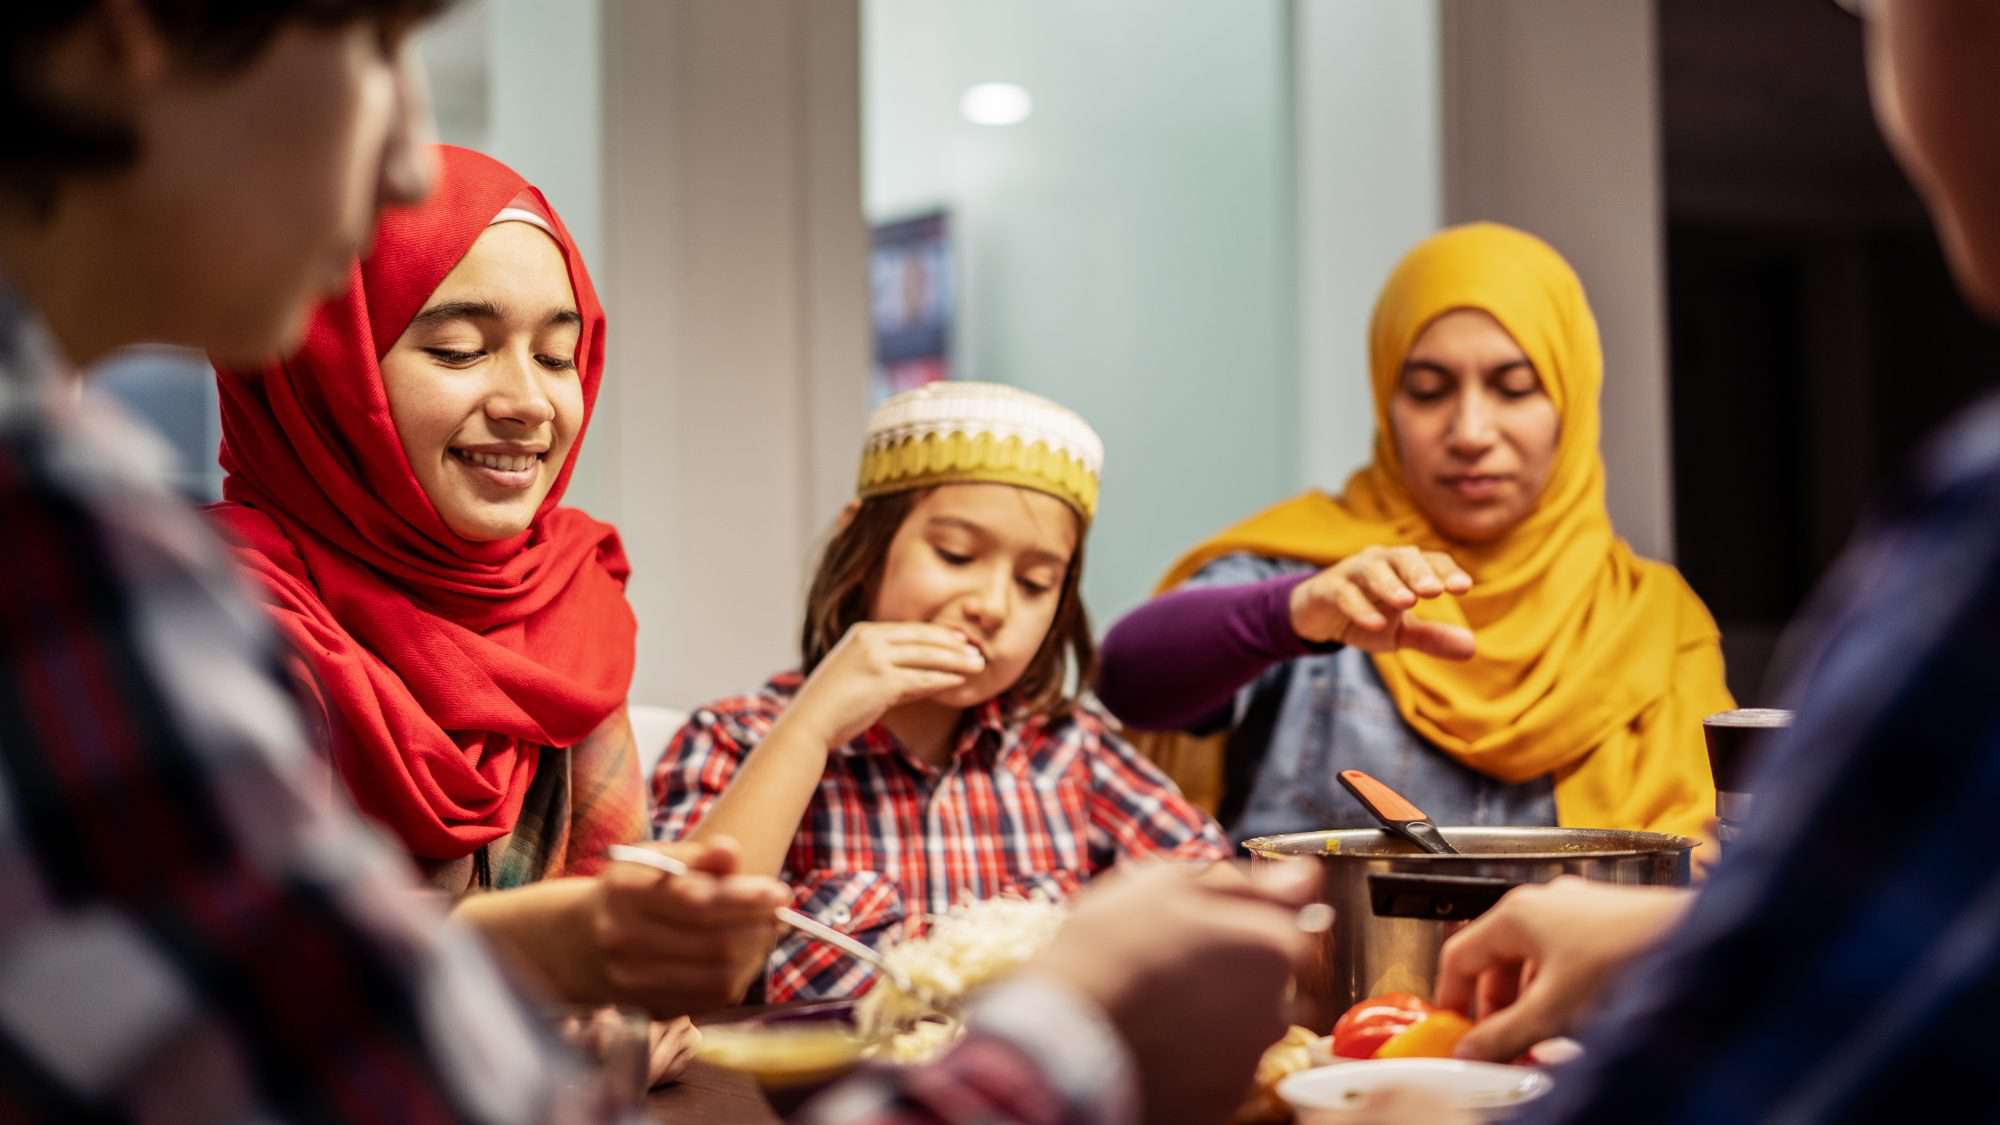 El ayuno puede provocar estreñimiento durante el Ramadán: estos consejos pueden ayudar